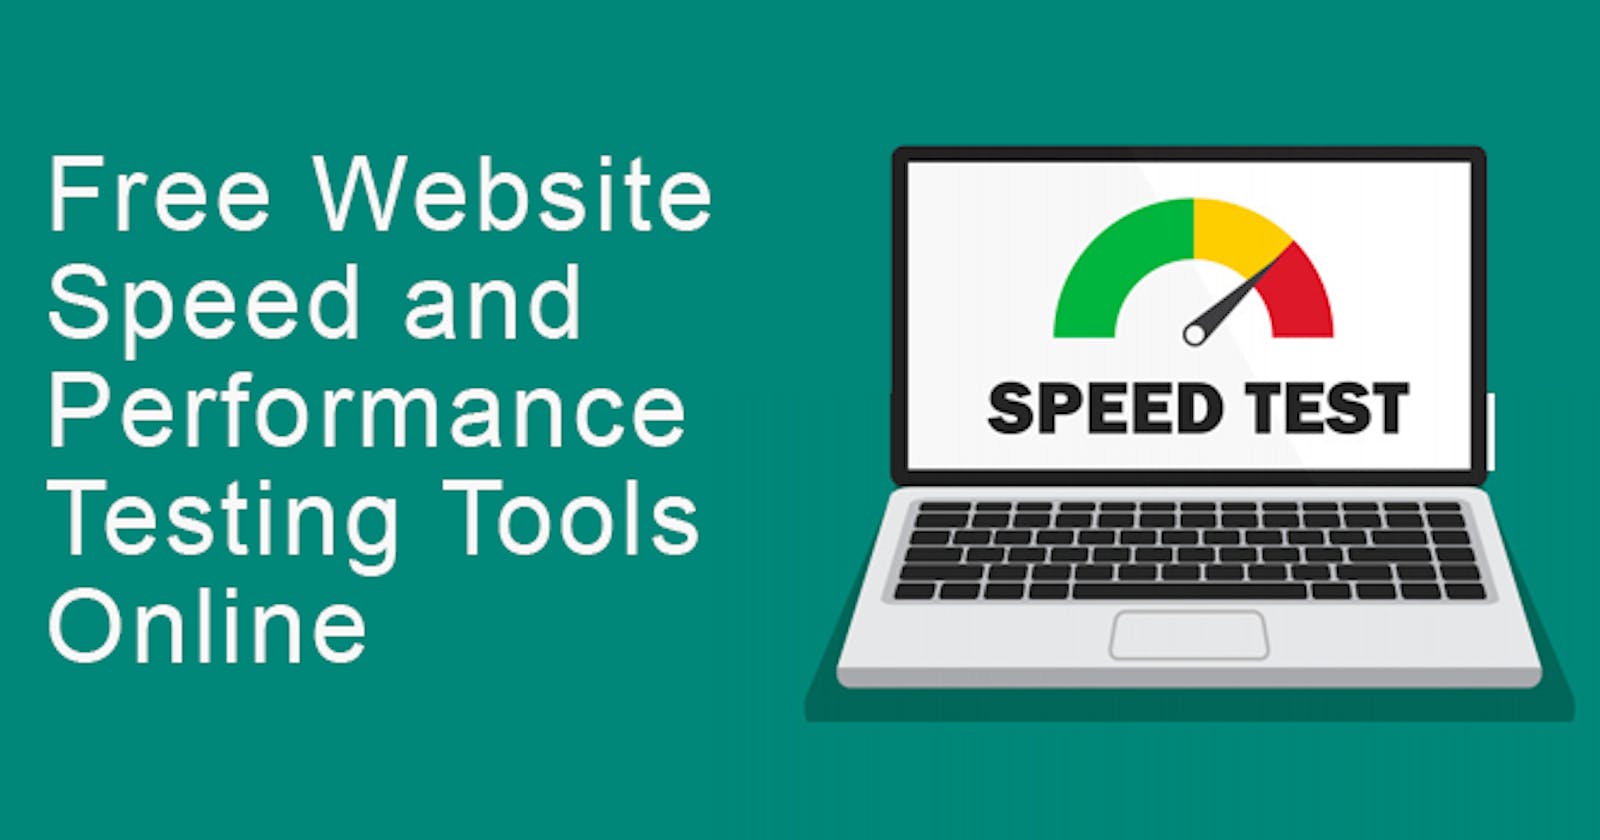 Free Website Speed Testing Tools Online